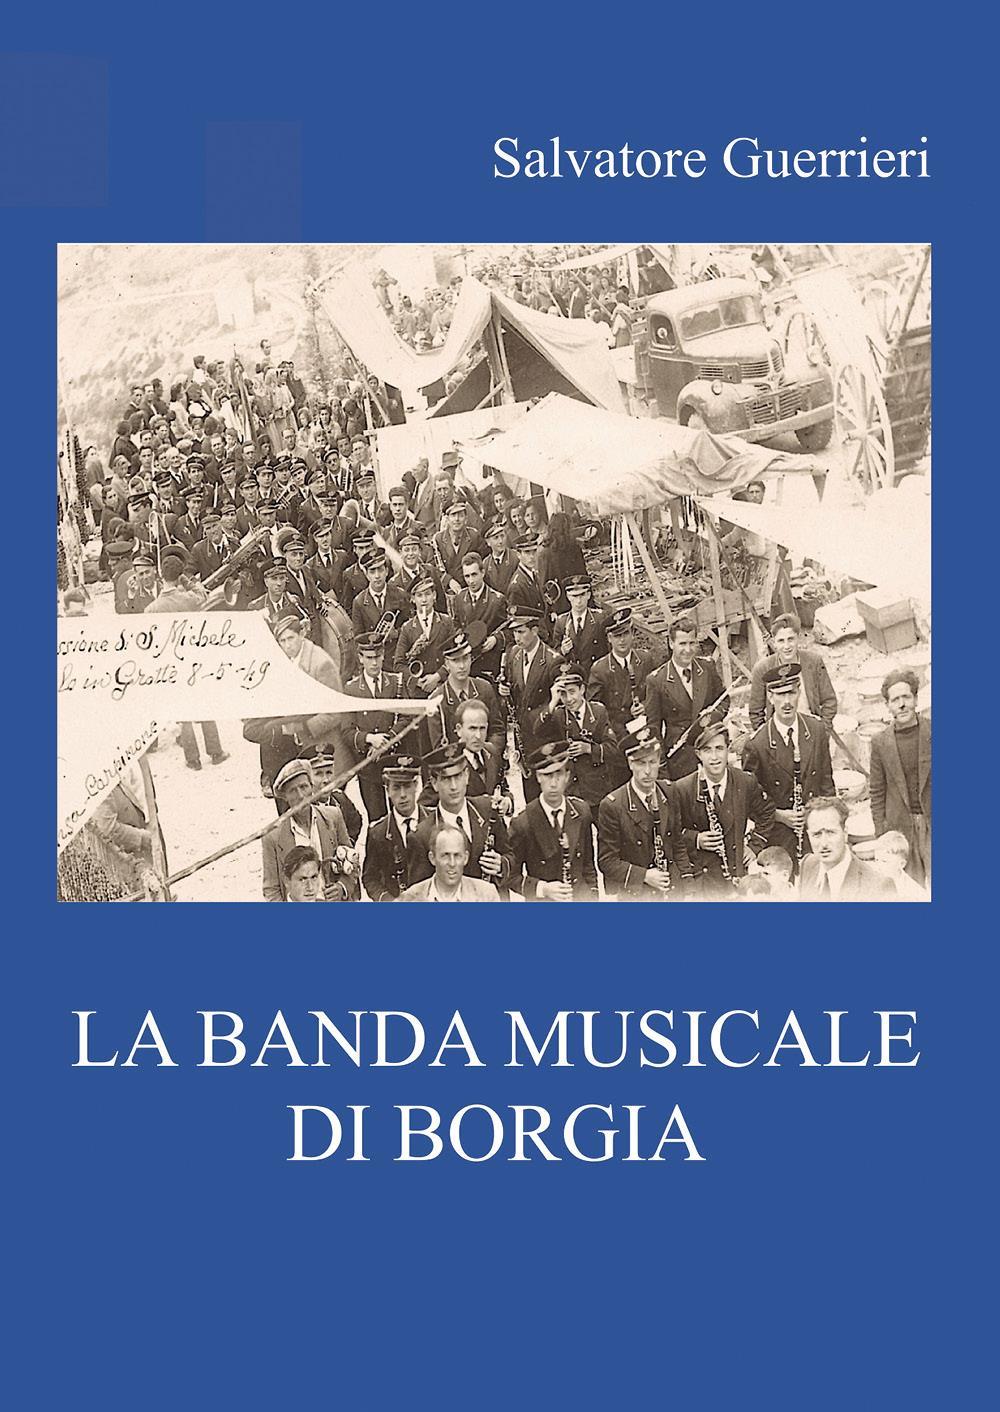 La Banda musicale di Borgia